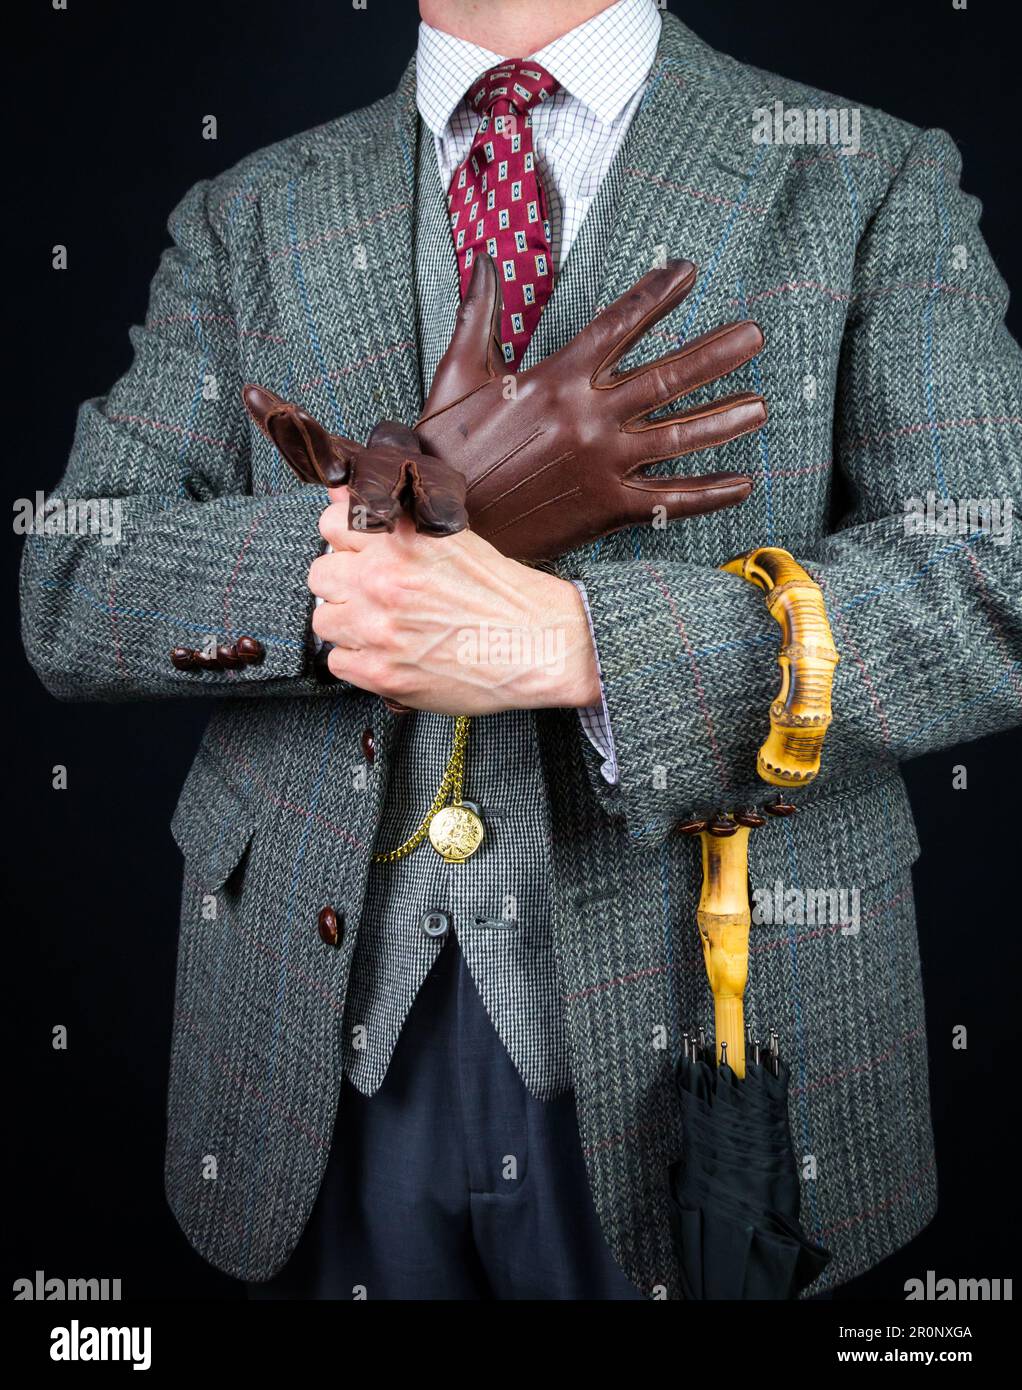 Portrait de l'homme en costume en tweed et parapluie tirant sur les gants en cuir. Style vintage et mode rétro d'un gentleman britannique classique. Banque D'Images